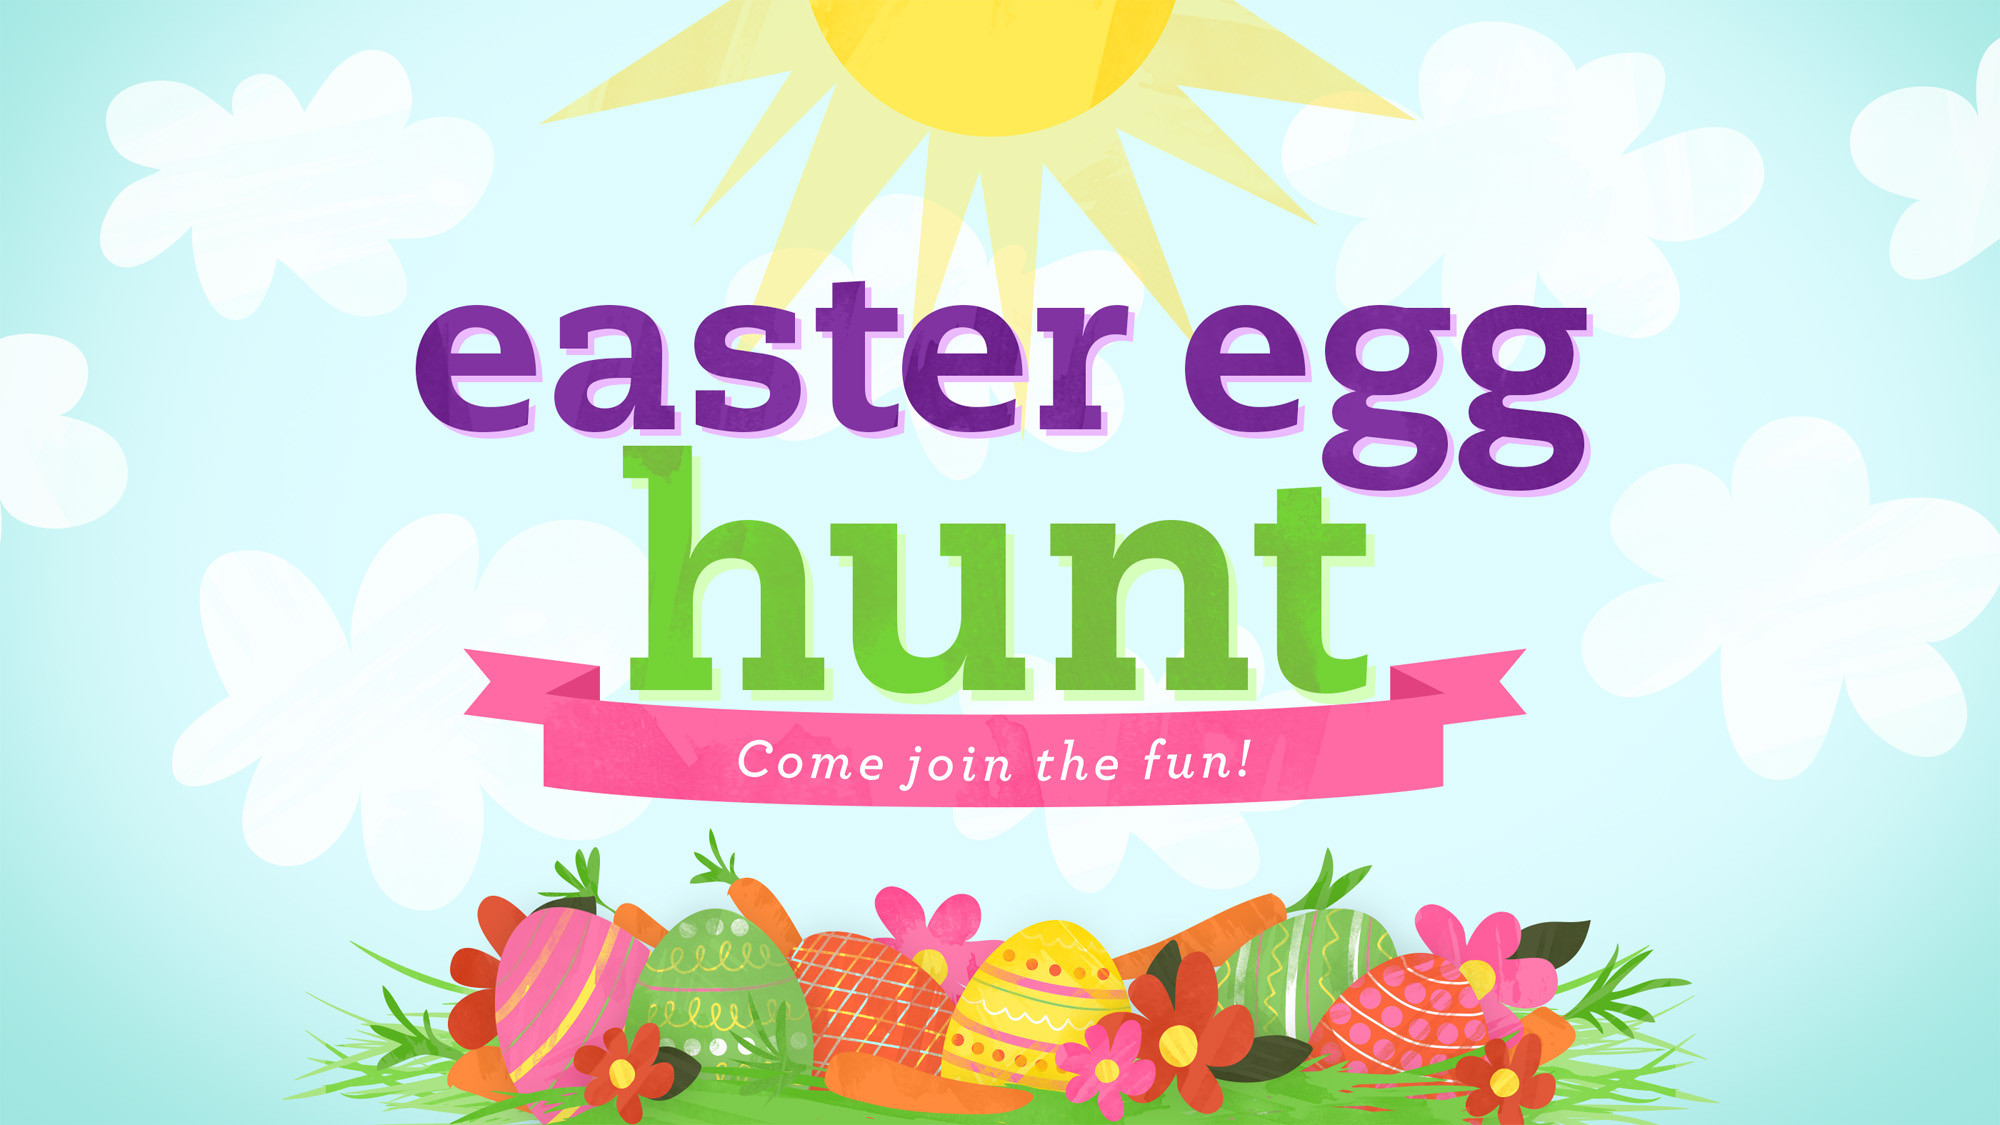 Easter Egg Hunt Ideas For Church
 munity Easter Egg Hunt Alvaton Church of Christ